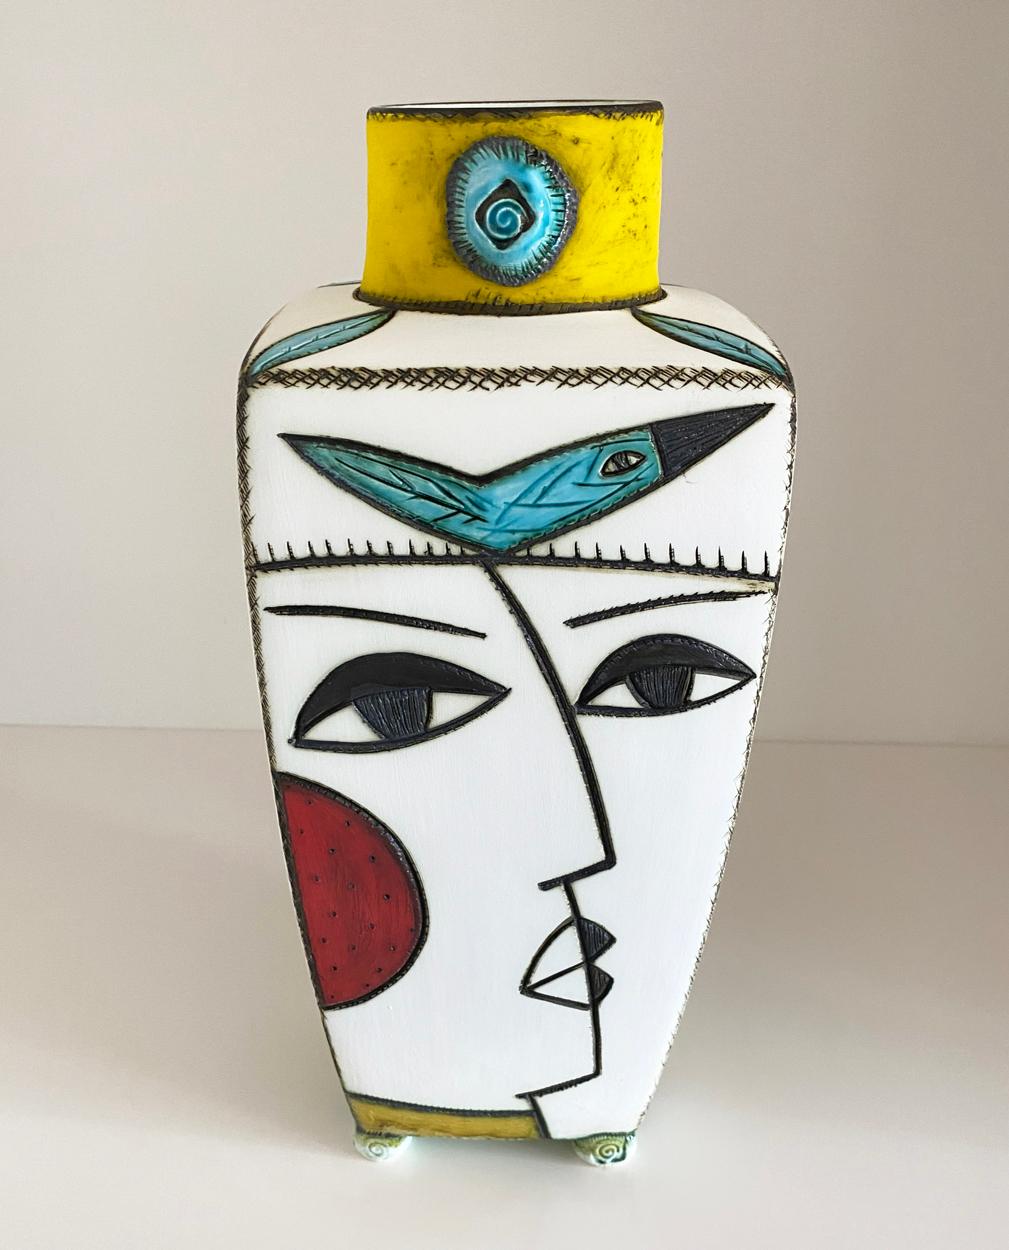 Un grand vase en poterie de la céramiste sud-africaine Charmaine Haines, largement collectionnée, produit en 2020.

Charmaine Haines est née en 1963 à Grahamstown et a suivi la formation de Hylton Nel au Technikon de Port Elizabeth. Elle a obtenu